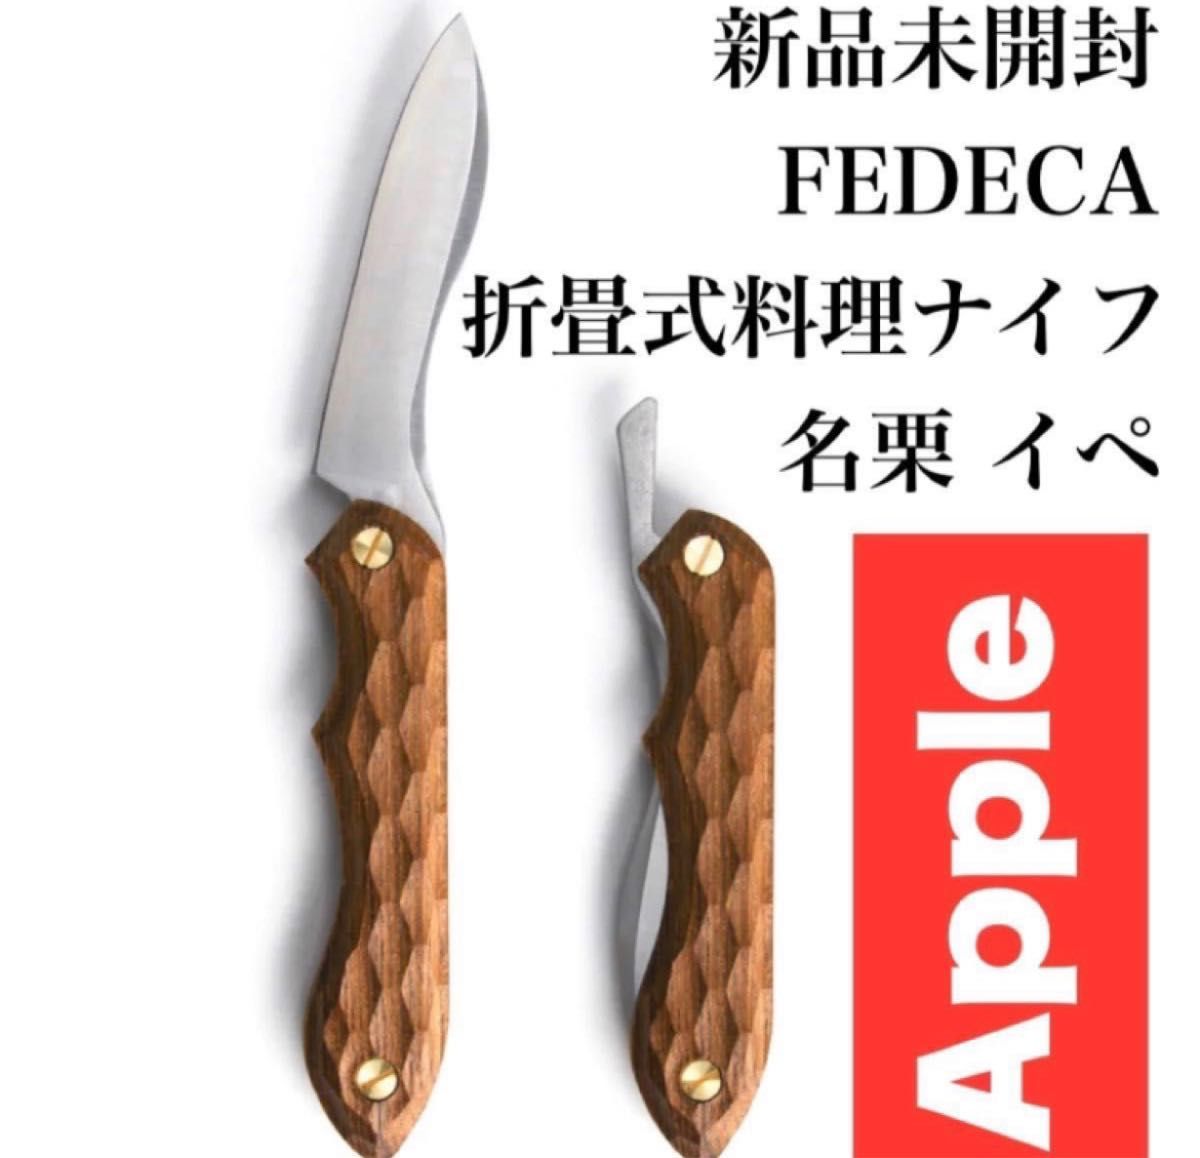 新品未開封】 FEDECA フェデカ 折畳式料理ナイフ 名栗 イペ ナイフ